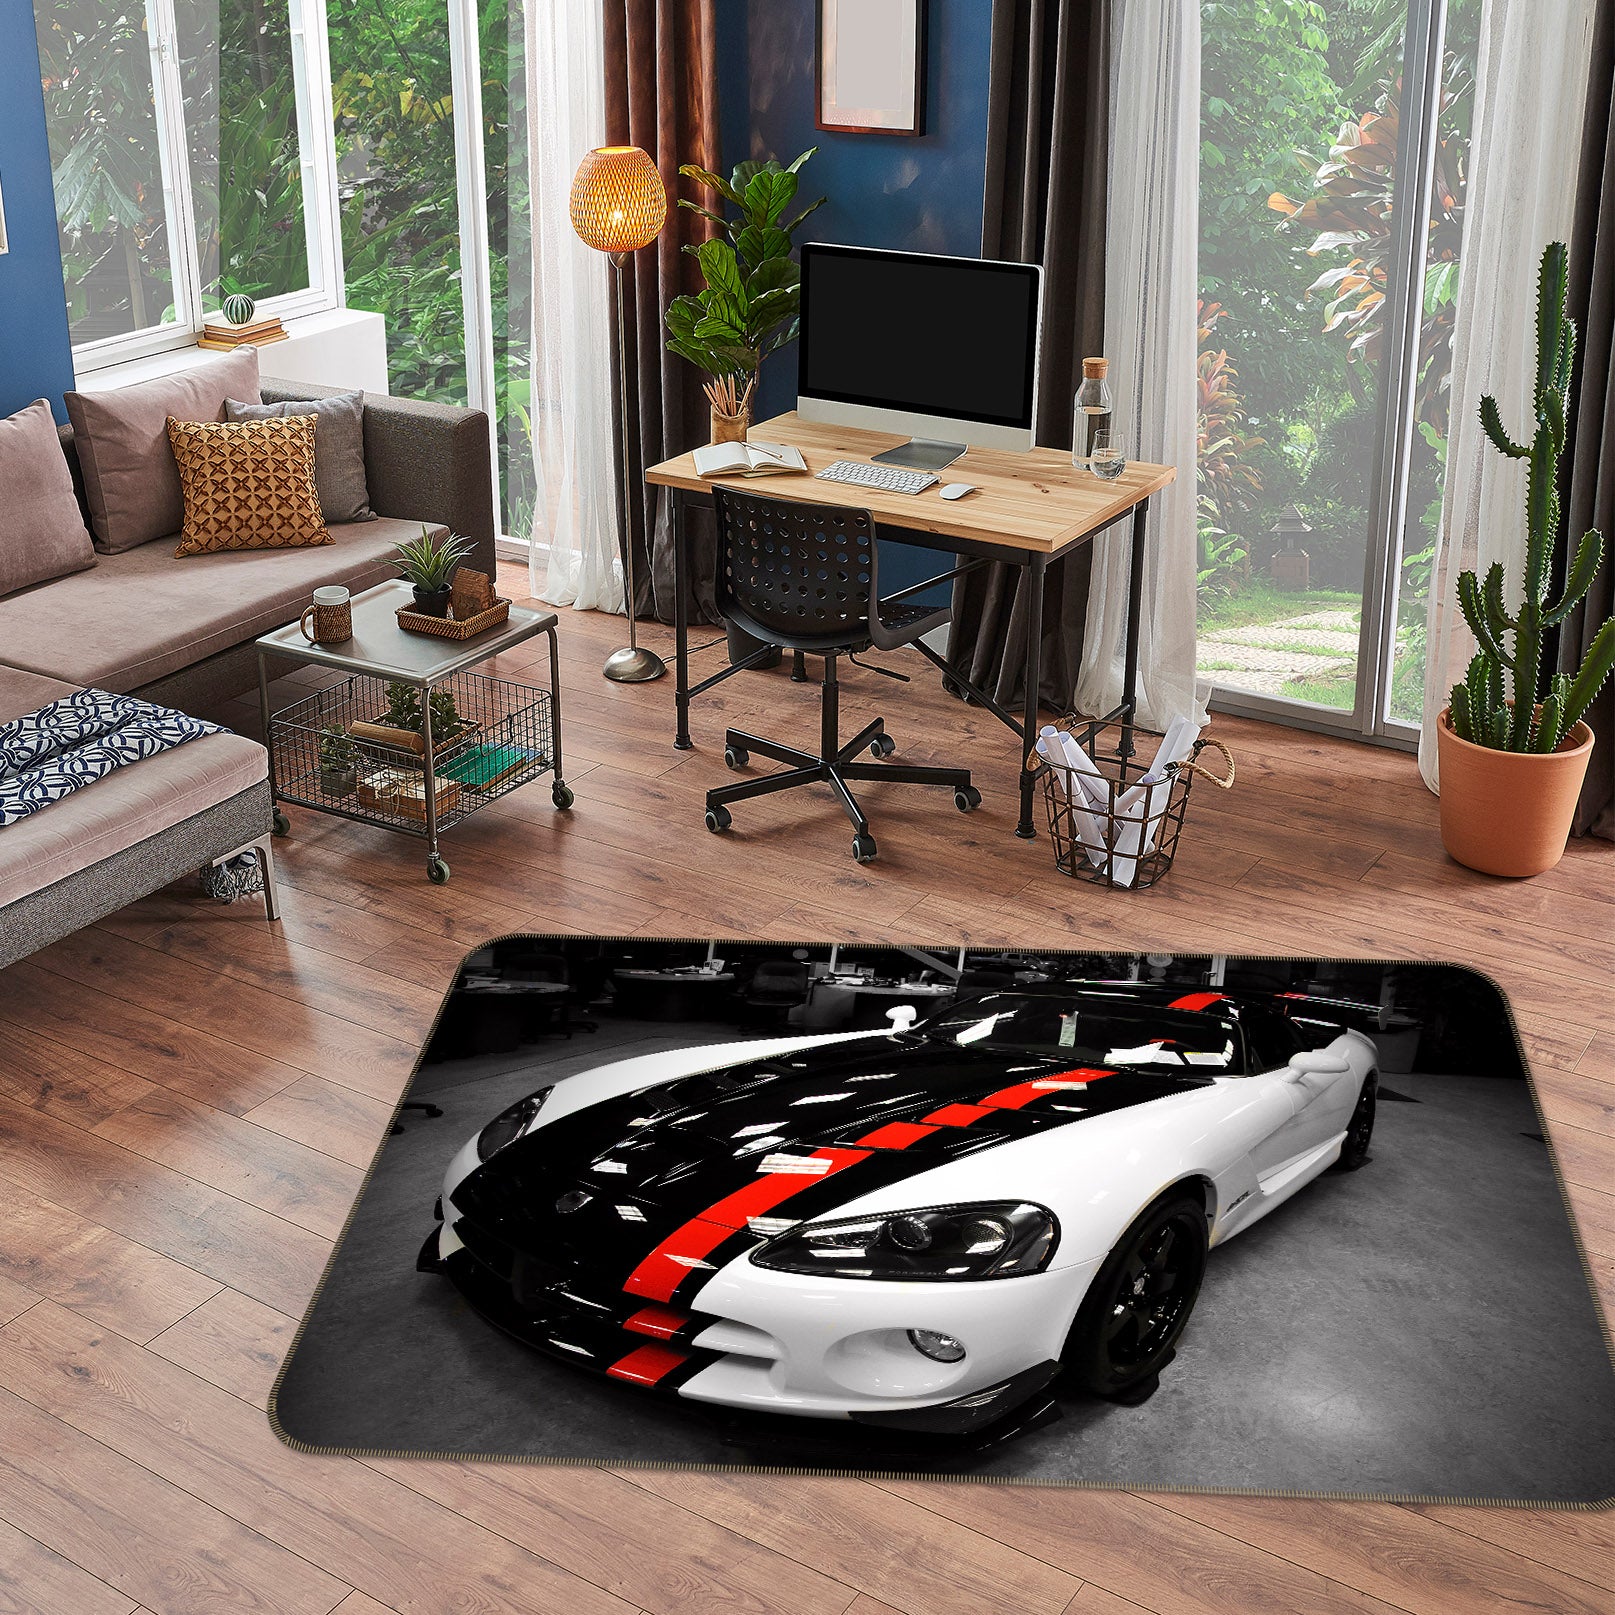 3D Red Black White Car 38220 Vehicle Non Slip Rug Mat